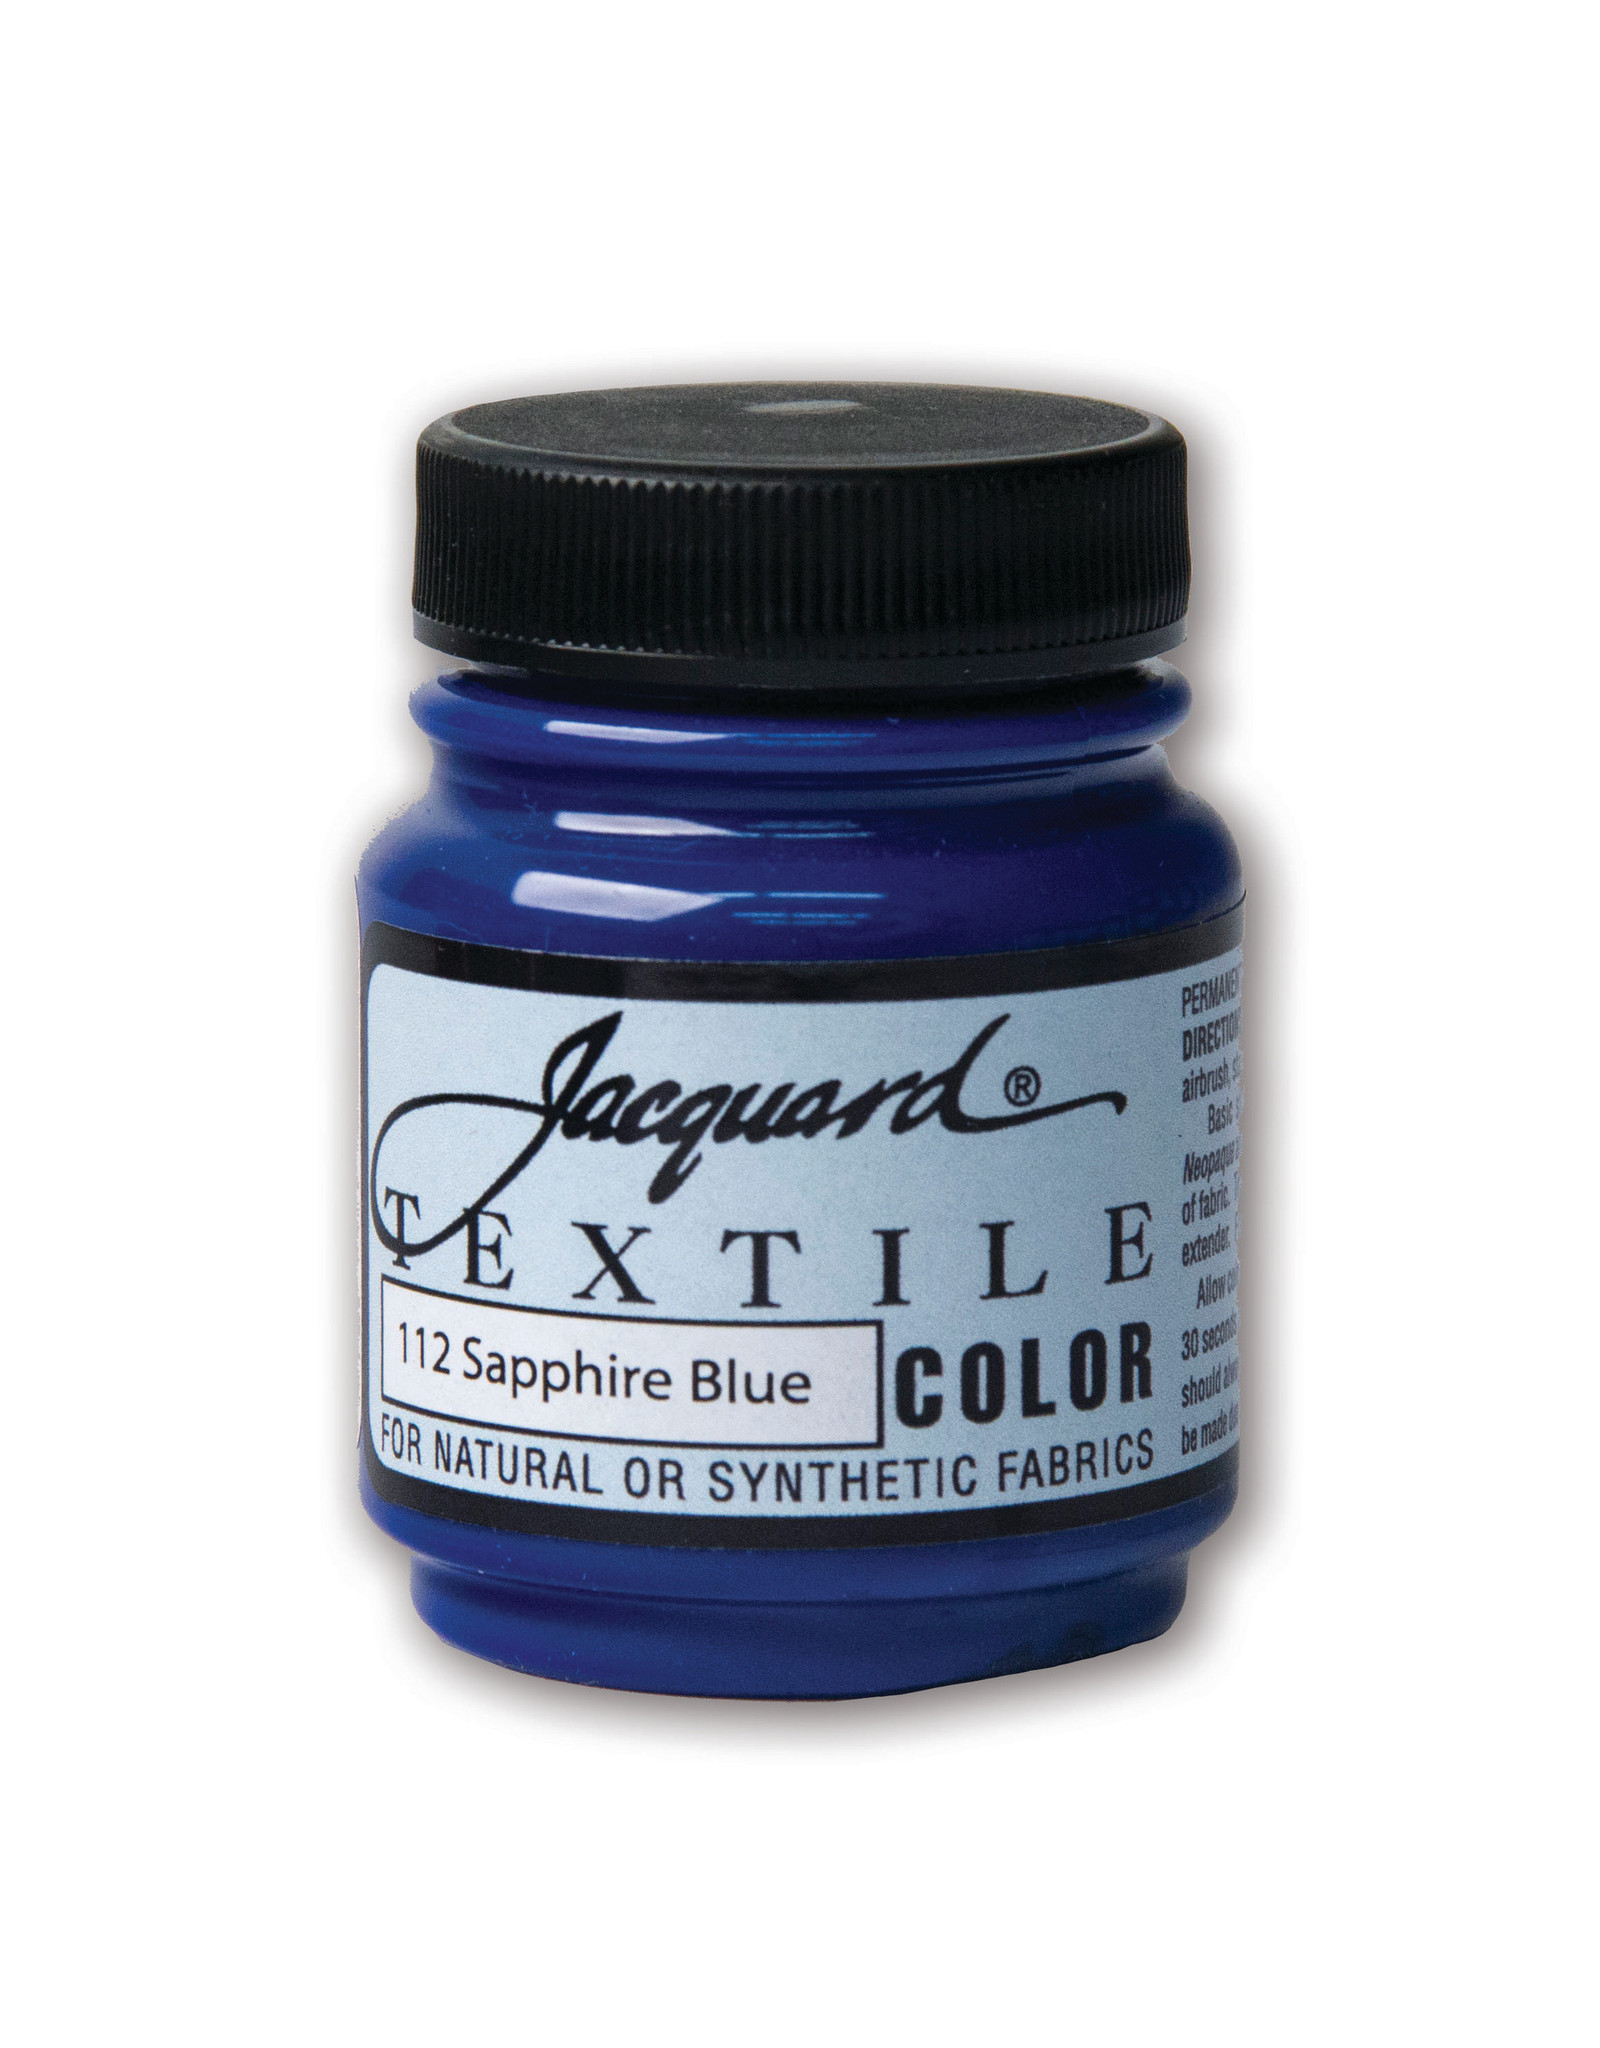 Jacquard Jacquard Textile Color, #112 Sapphire Blue